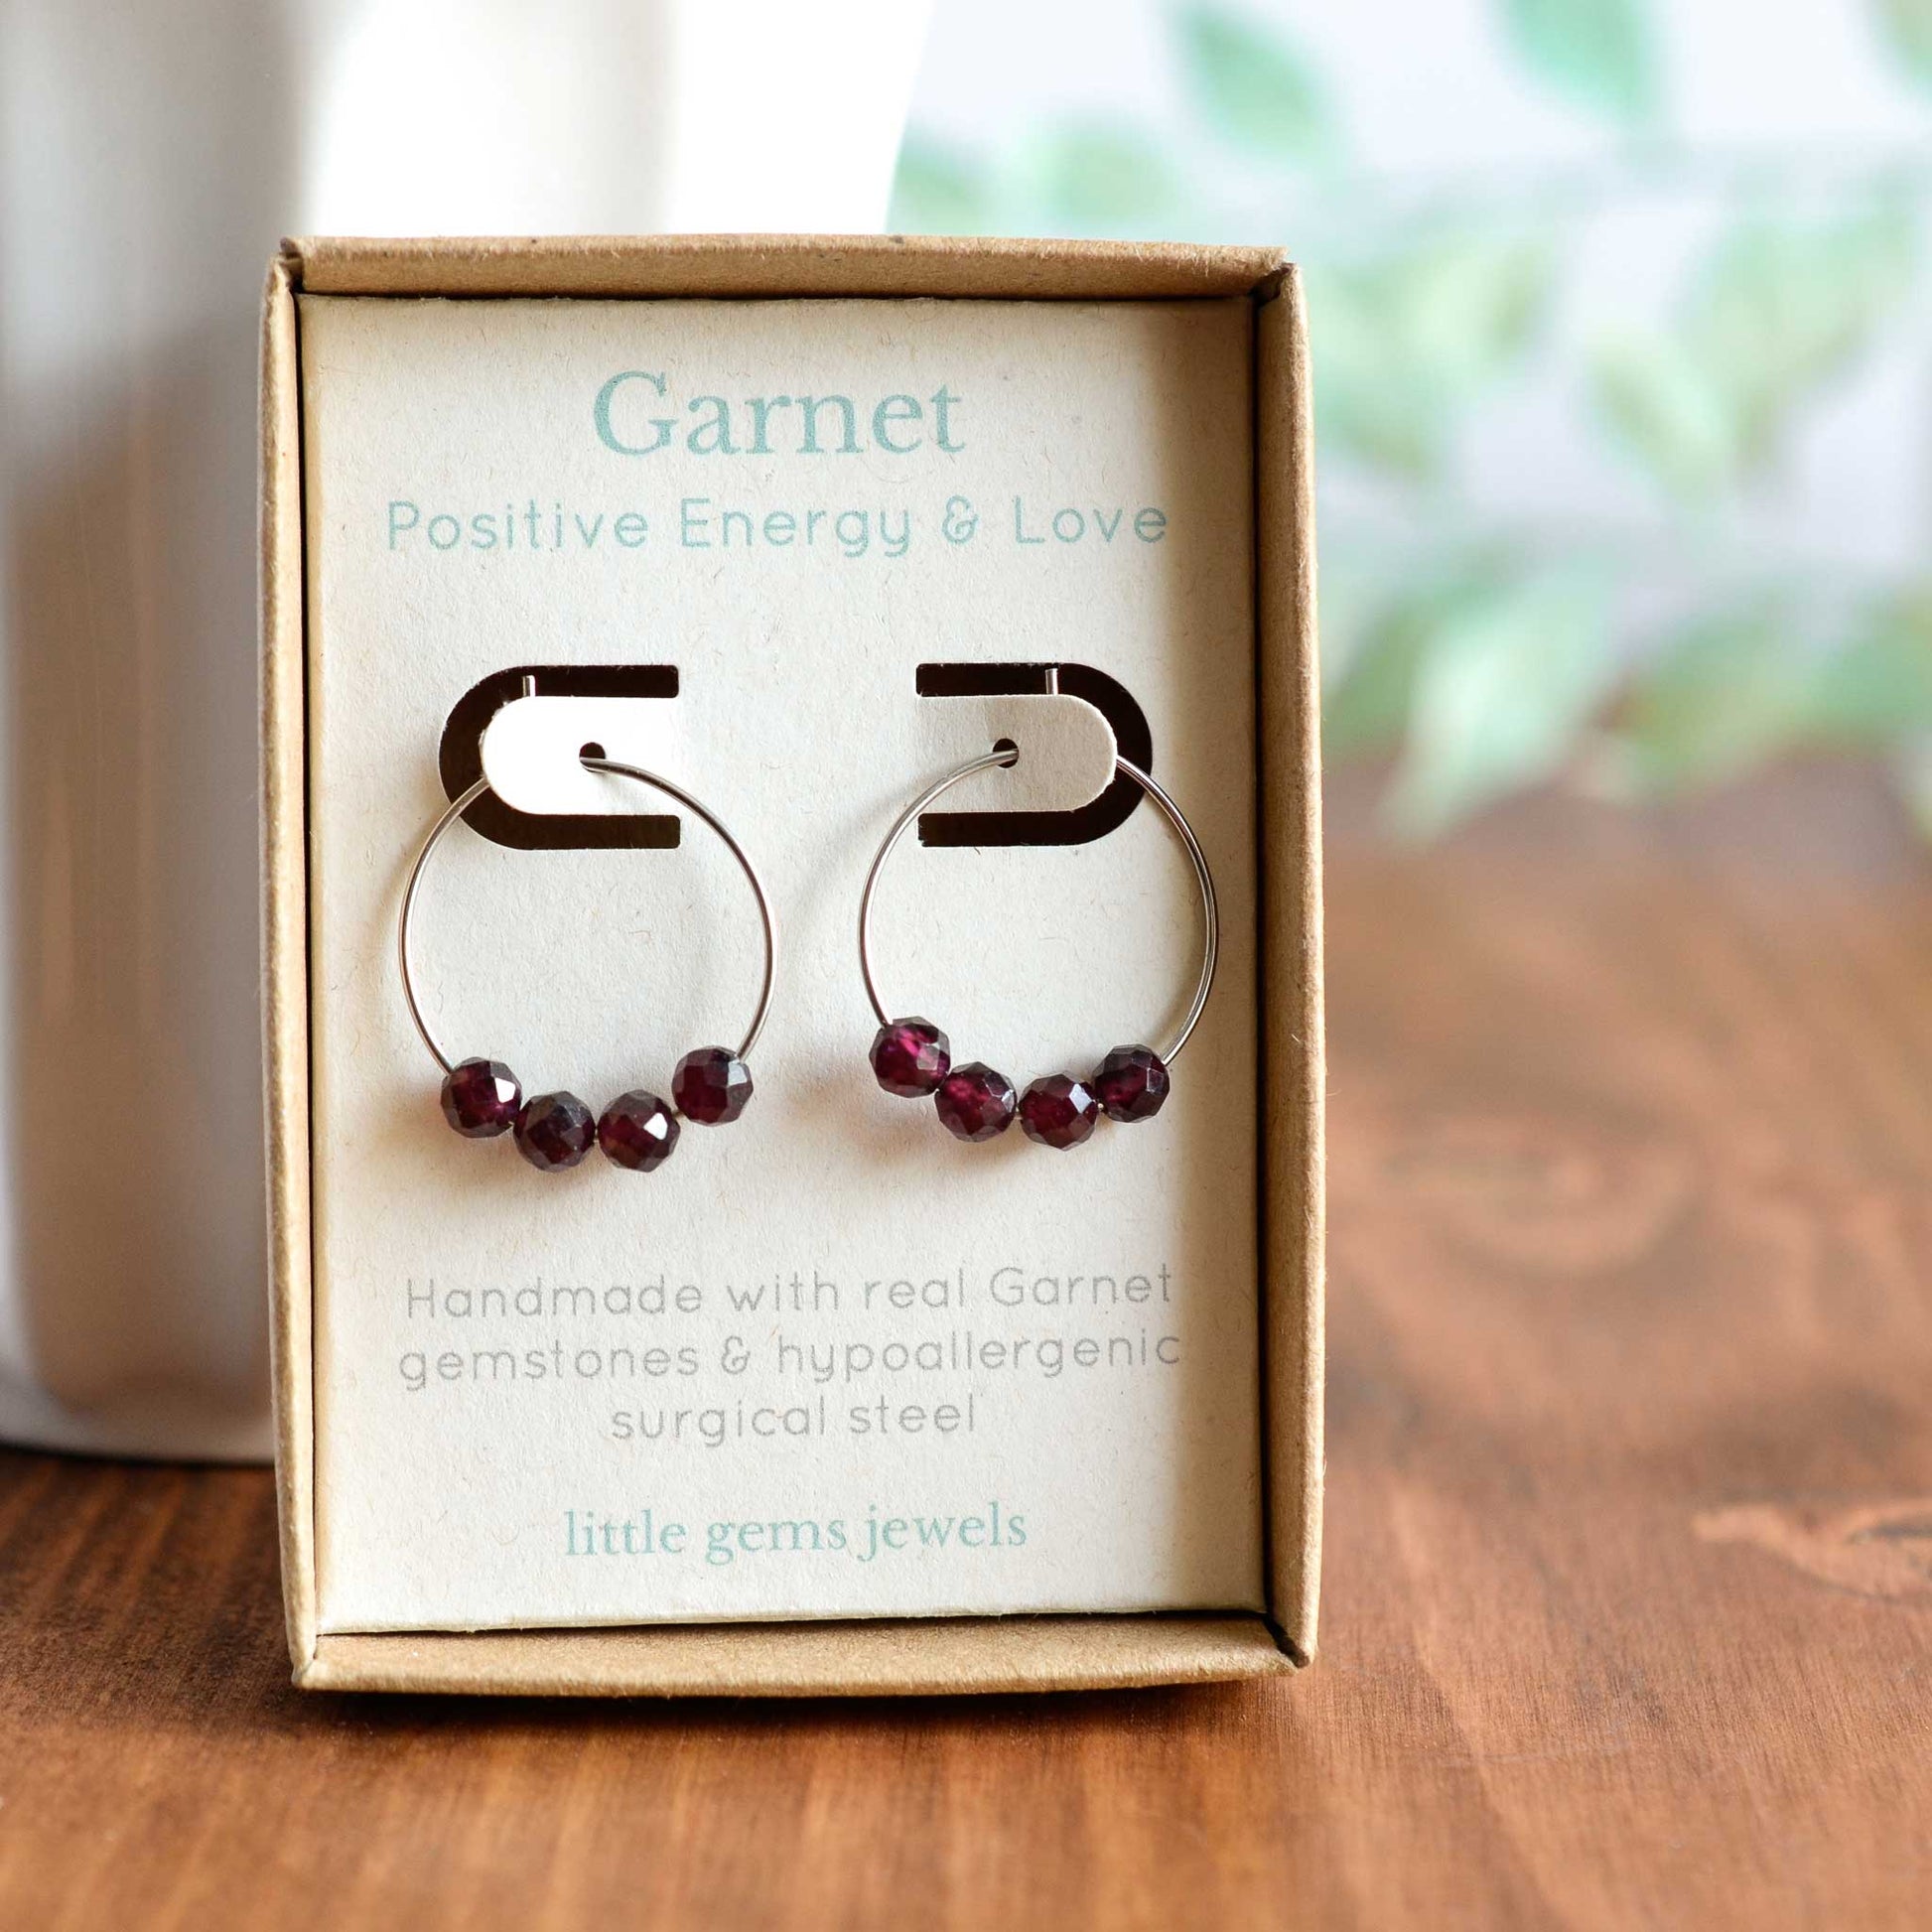 Garnet gemstone hoop earrings in gift box